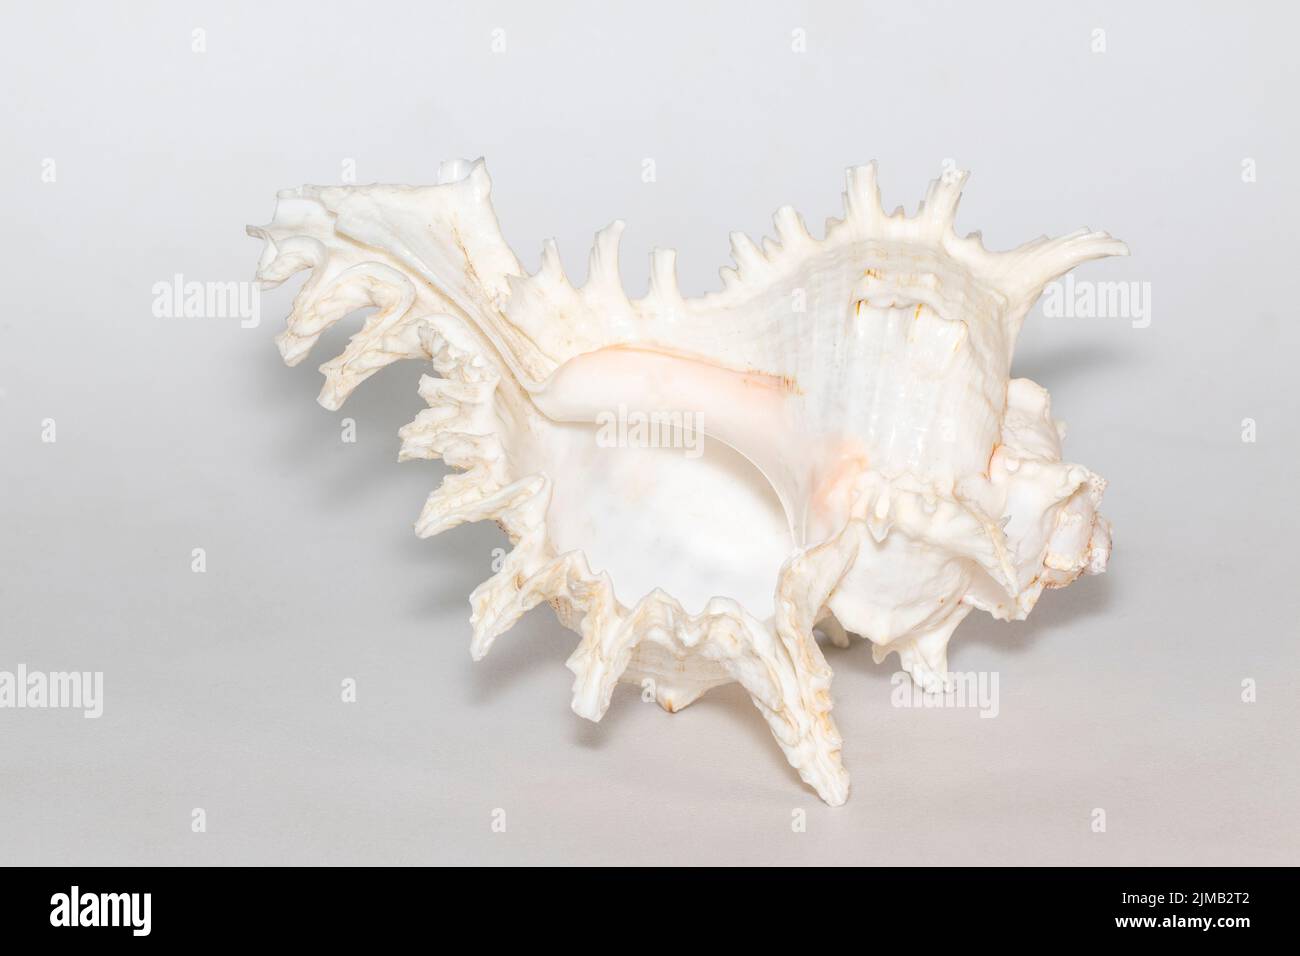 Immagine del chicoreus ramosus seashell su sfondo bianco. Conchiglie marine. Animali sottomarini. Foto Stock